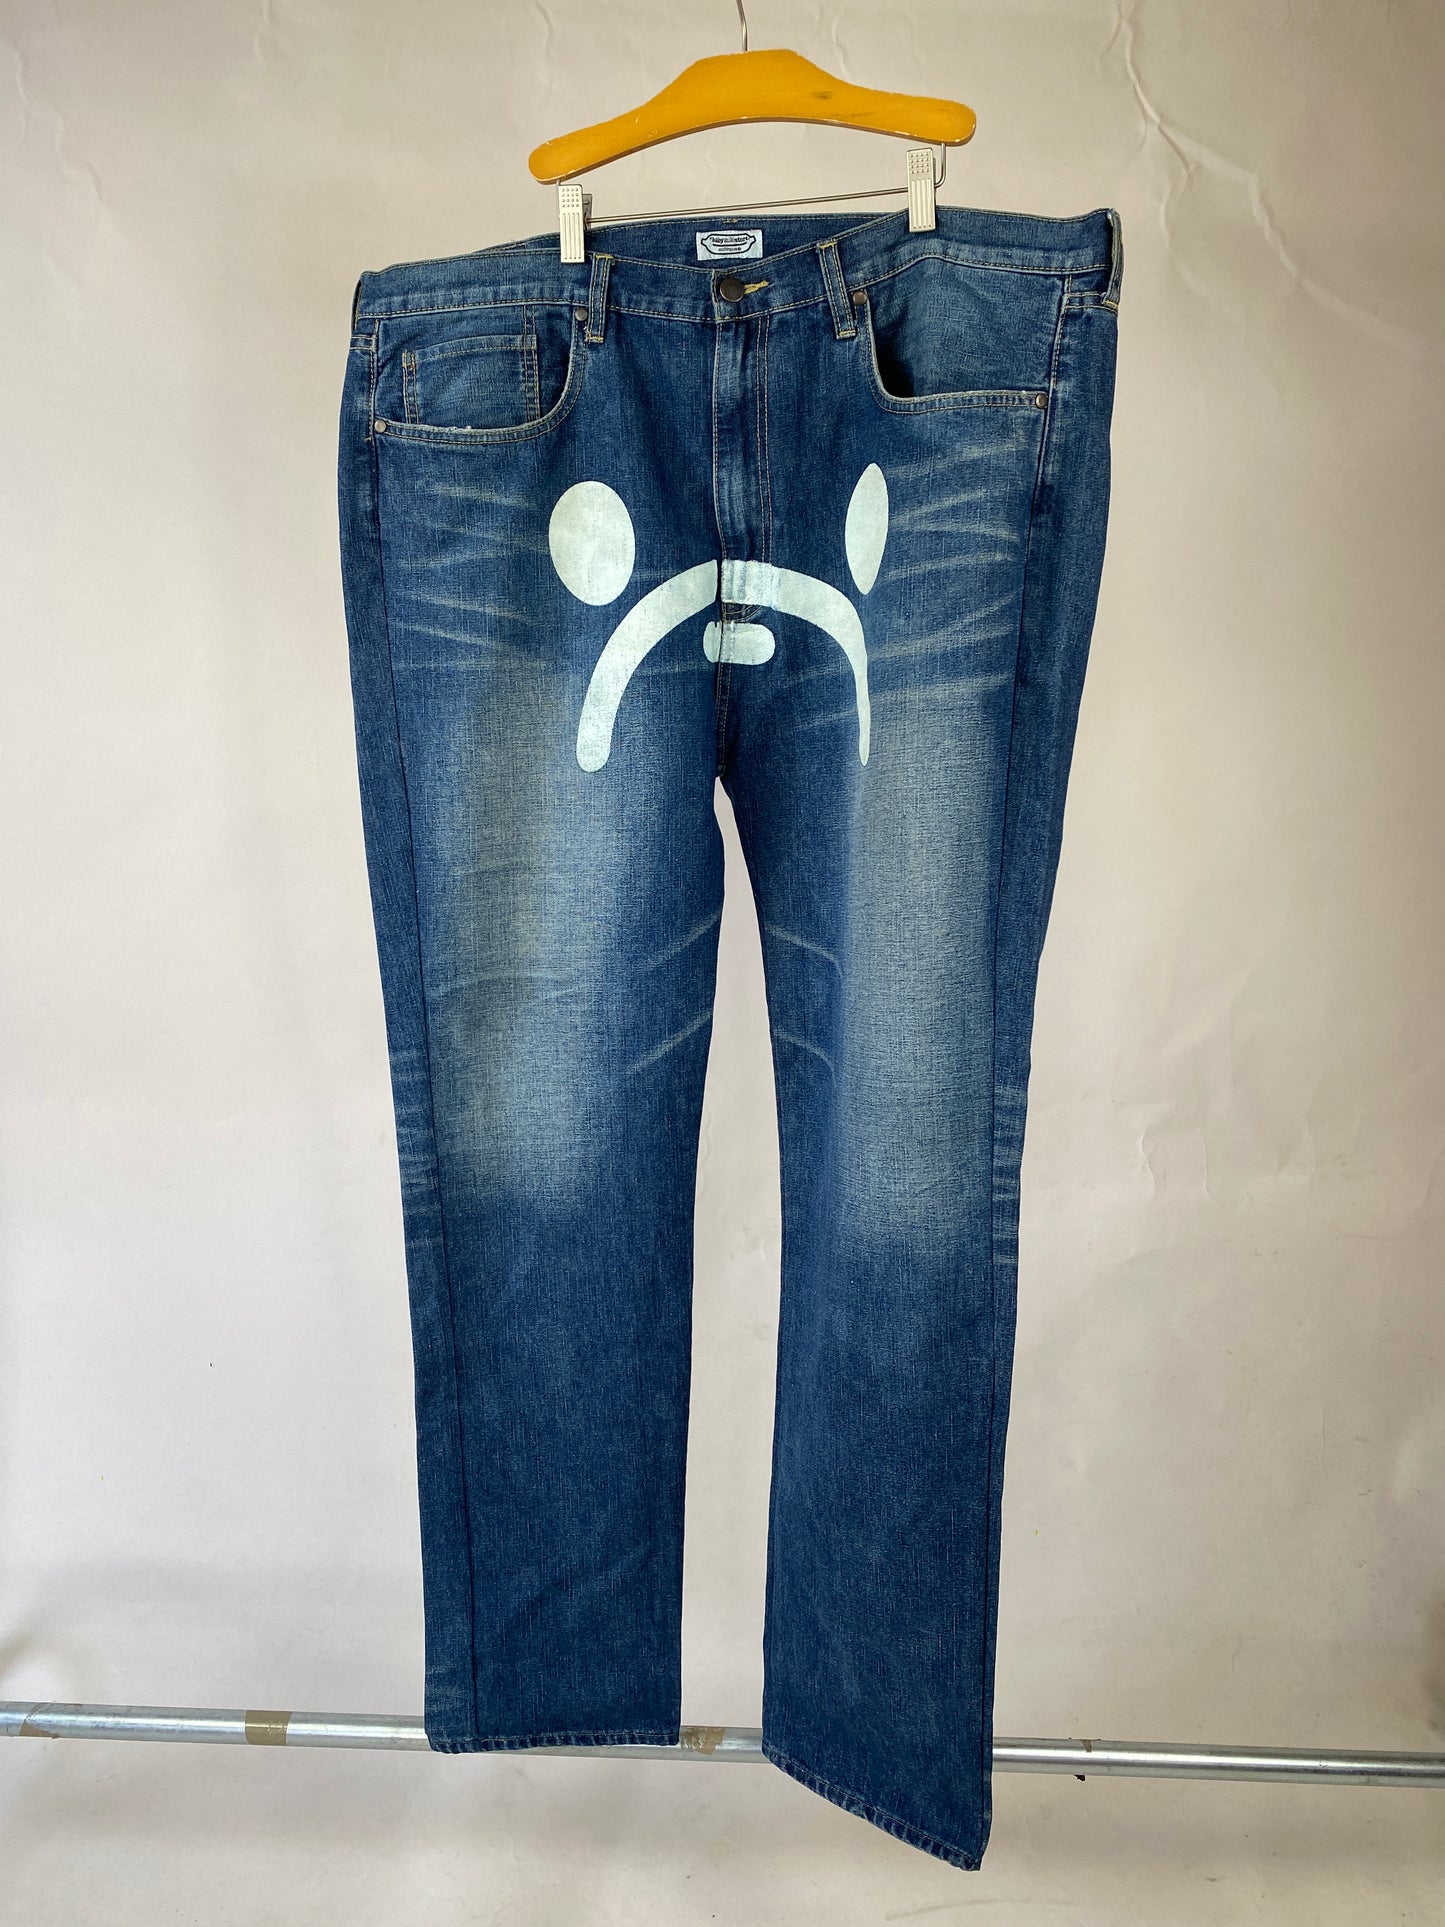 Vintage BAPE Jeans